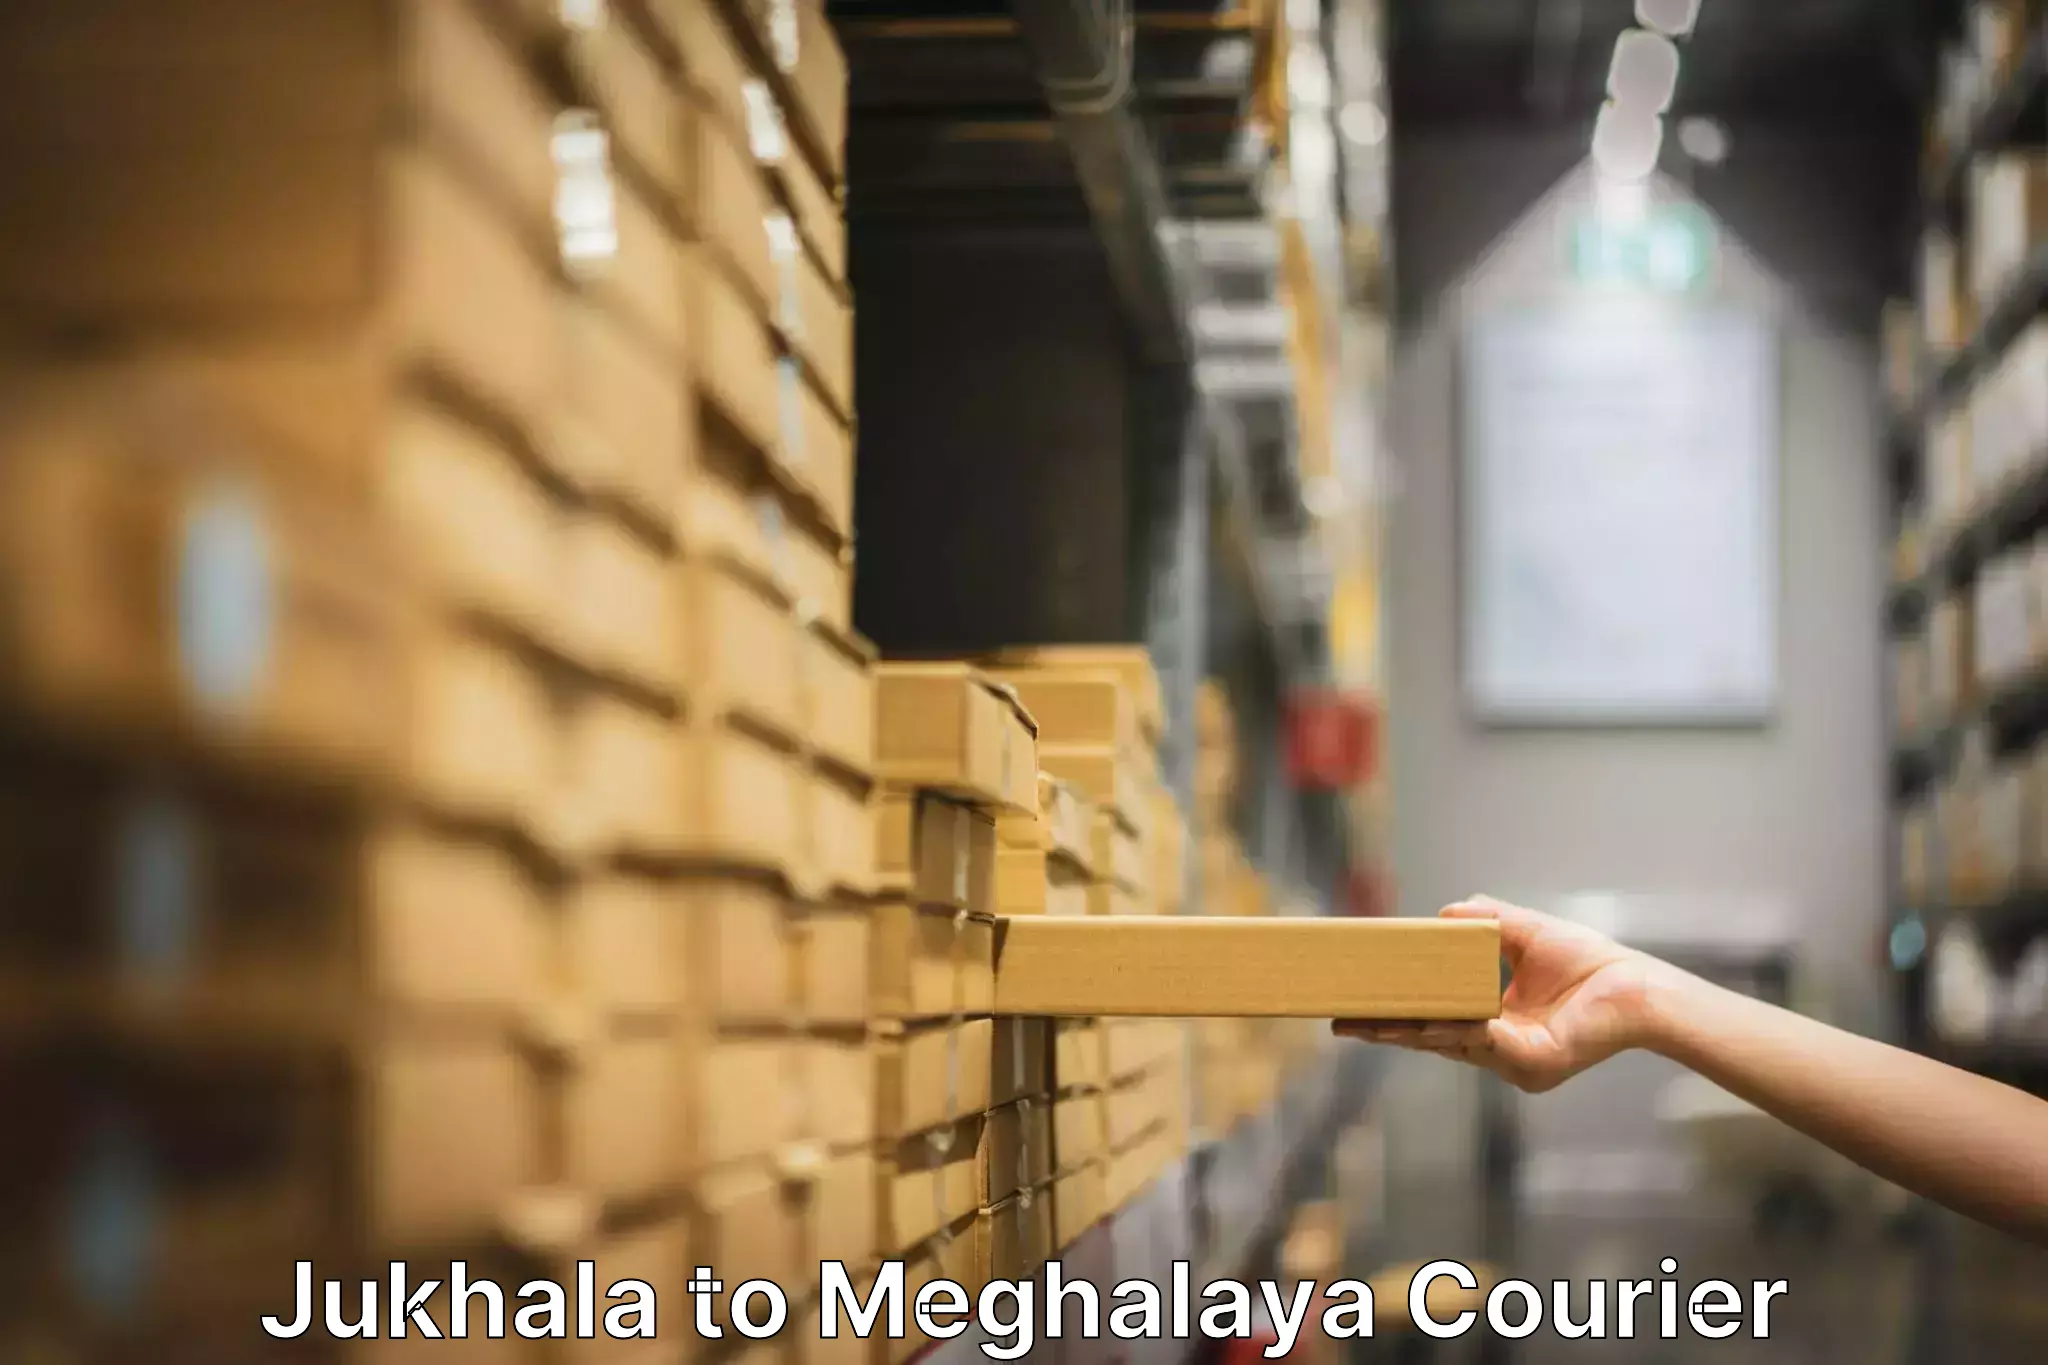 Professional packing services Jukhala to Meghalaya